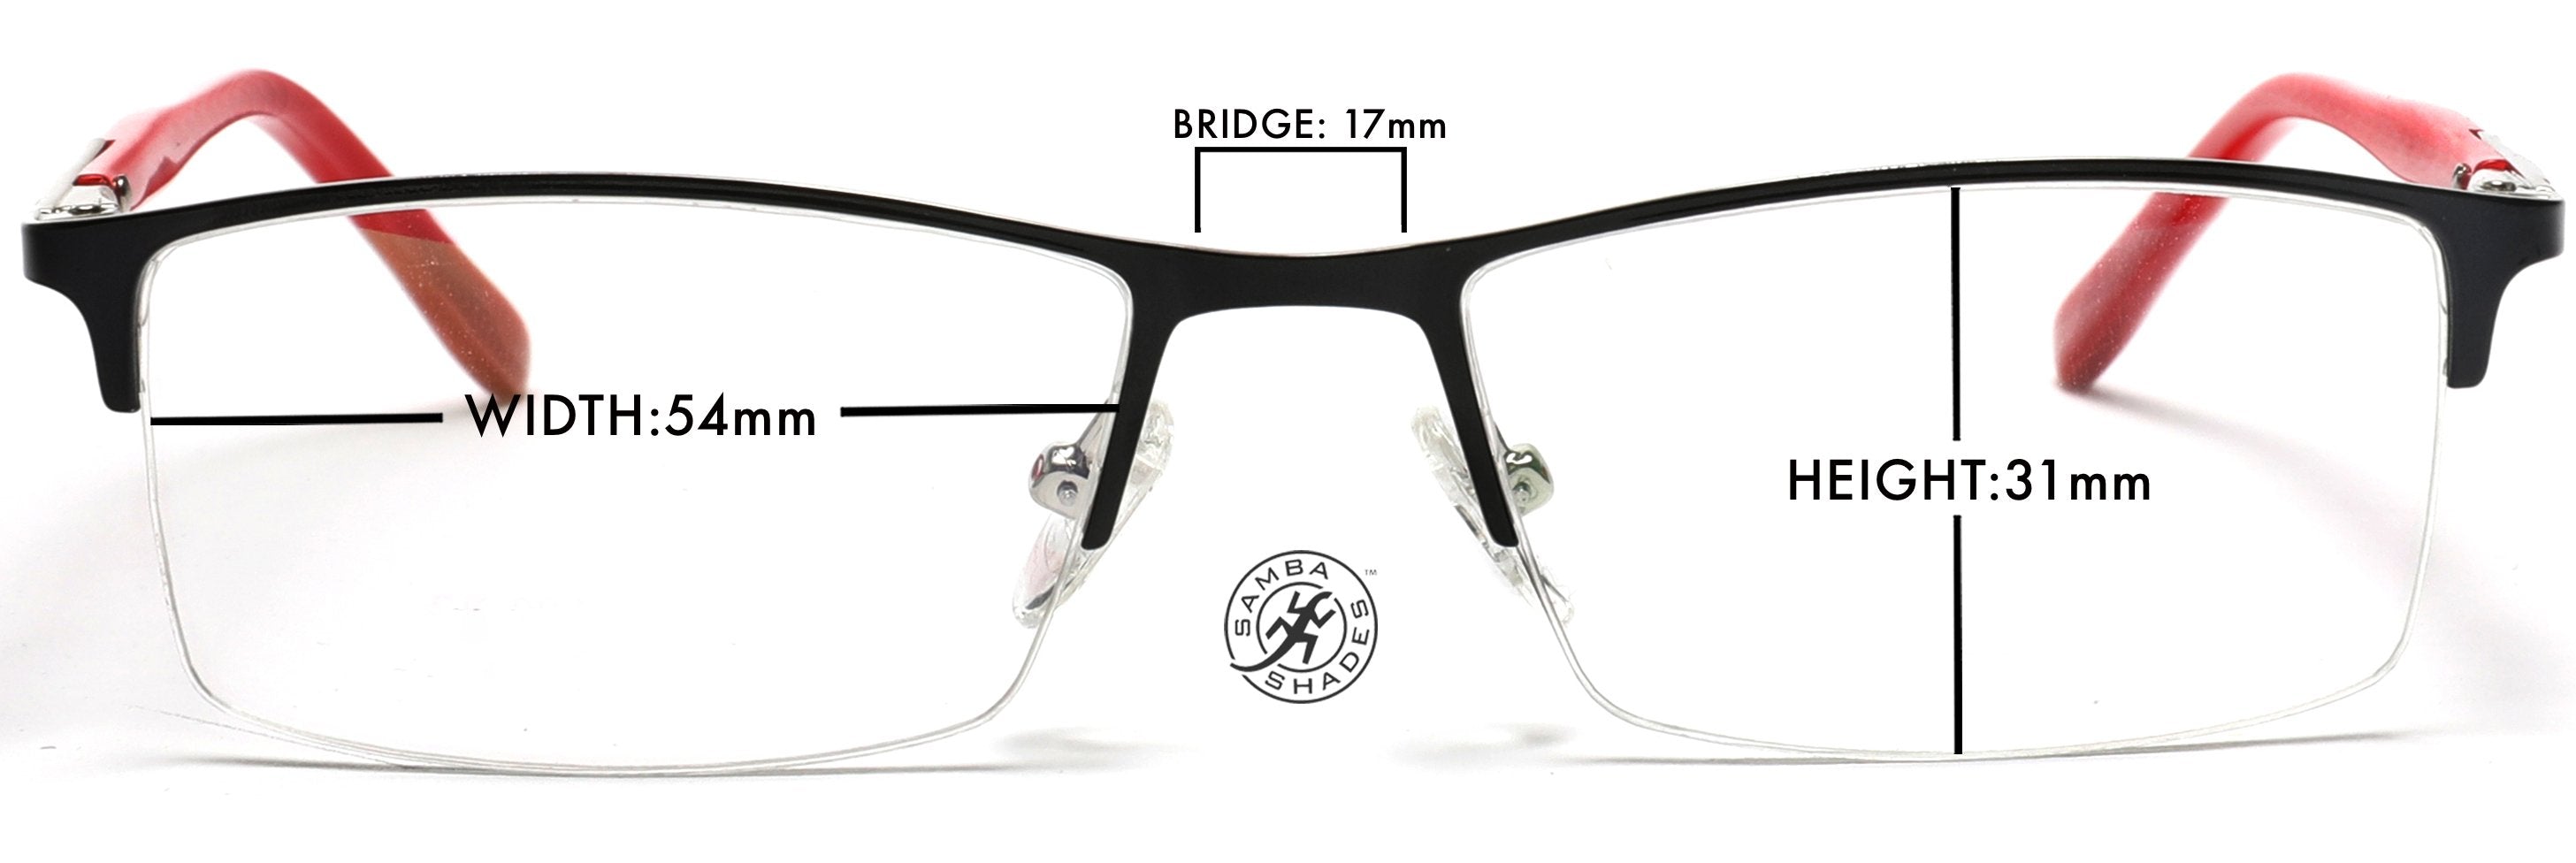 Tango Optics Rectangle Metal Eyeglasses Frame Luxe RX Stainless Steel Jocelyn Bell Black Rectangle For Prescription Lens-Samba Shades